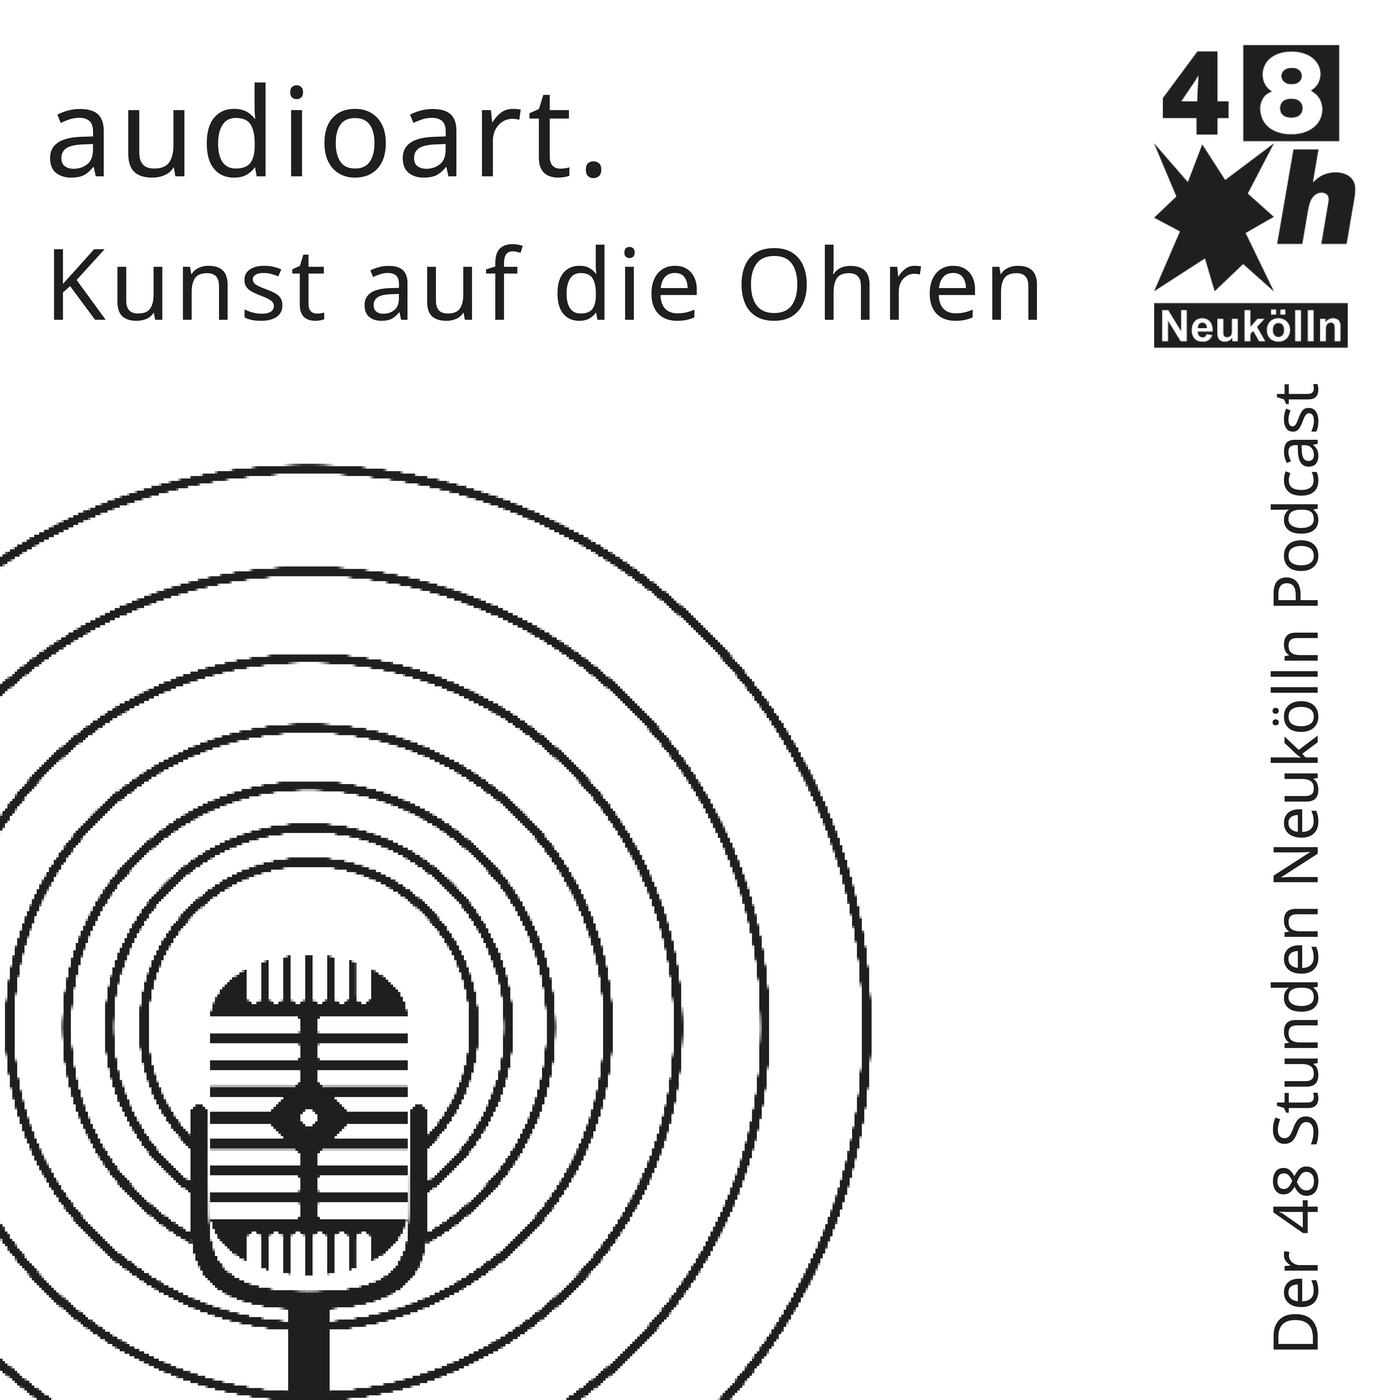 #2: audioart - Kunst auf die Ohren